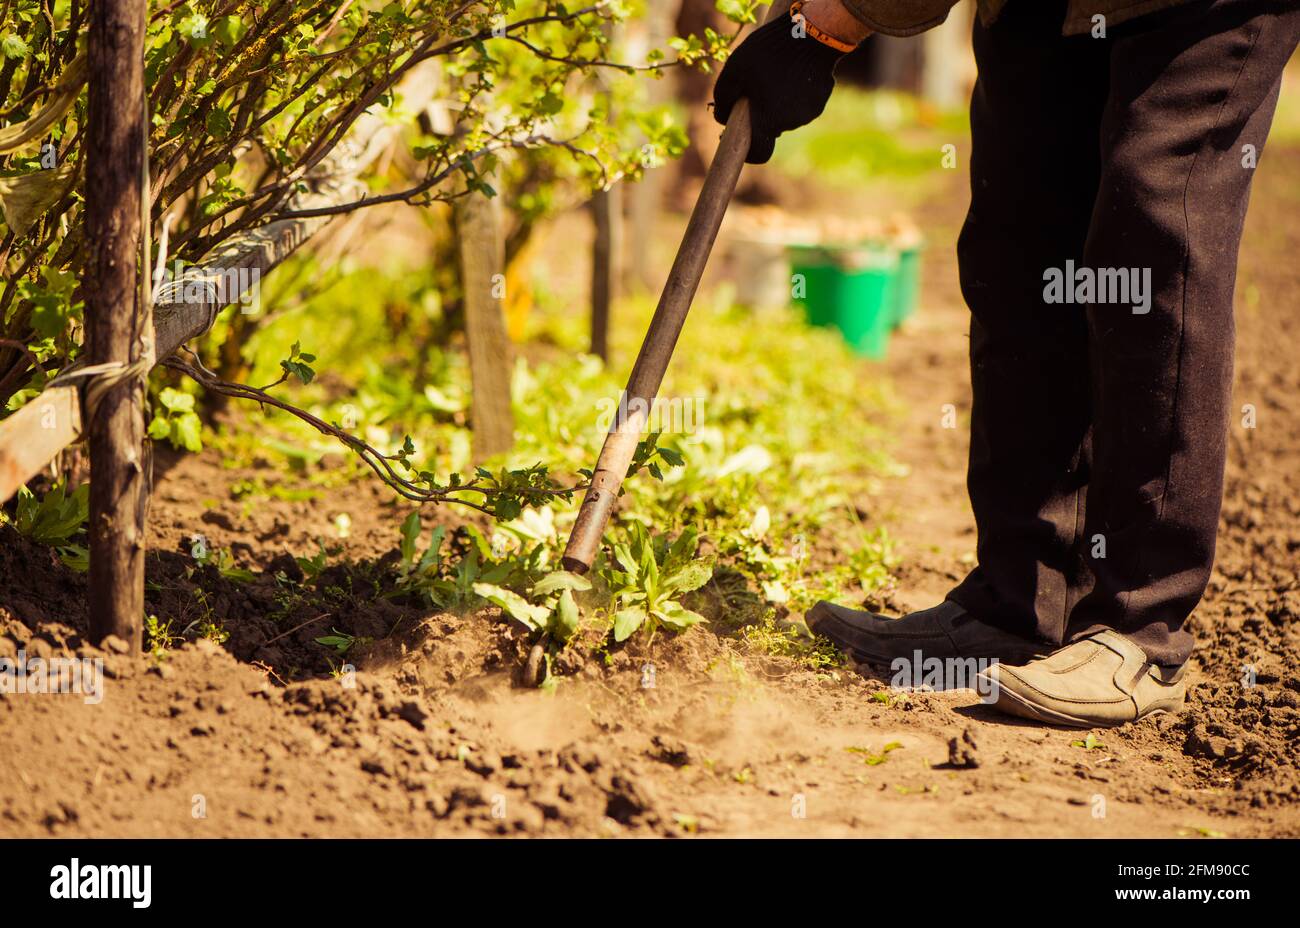 coltivatore anziano che lavora con i rastrelli per pulire il terreno agricolo Foto Stock